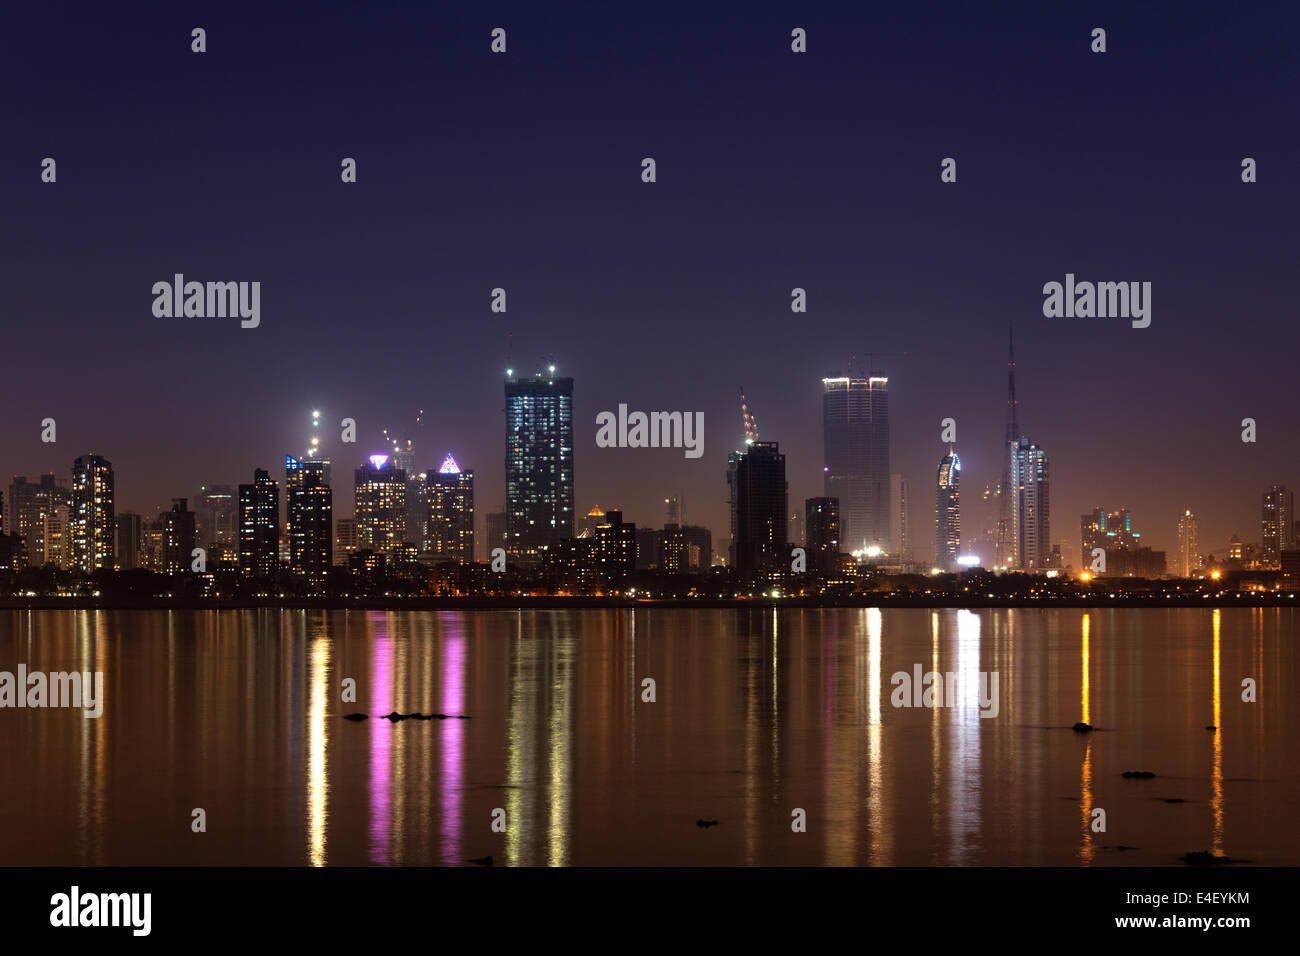 Mumbai skyline at night. Stock Photo